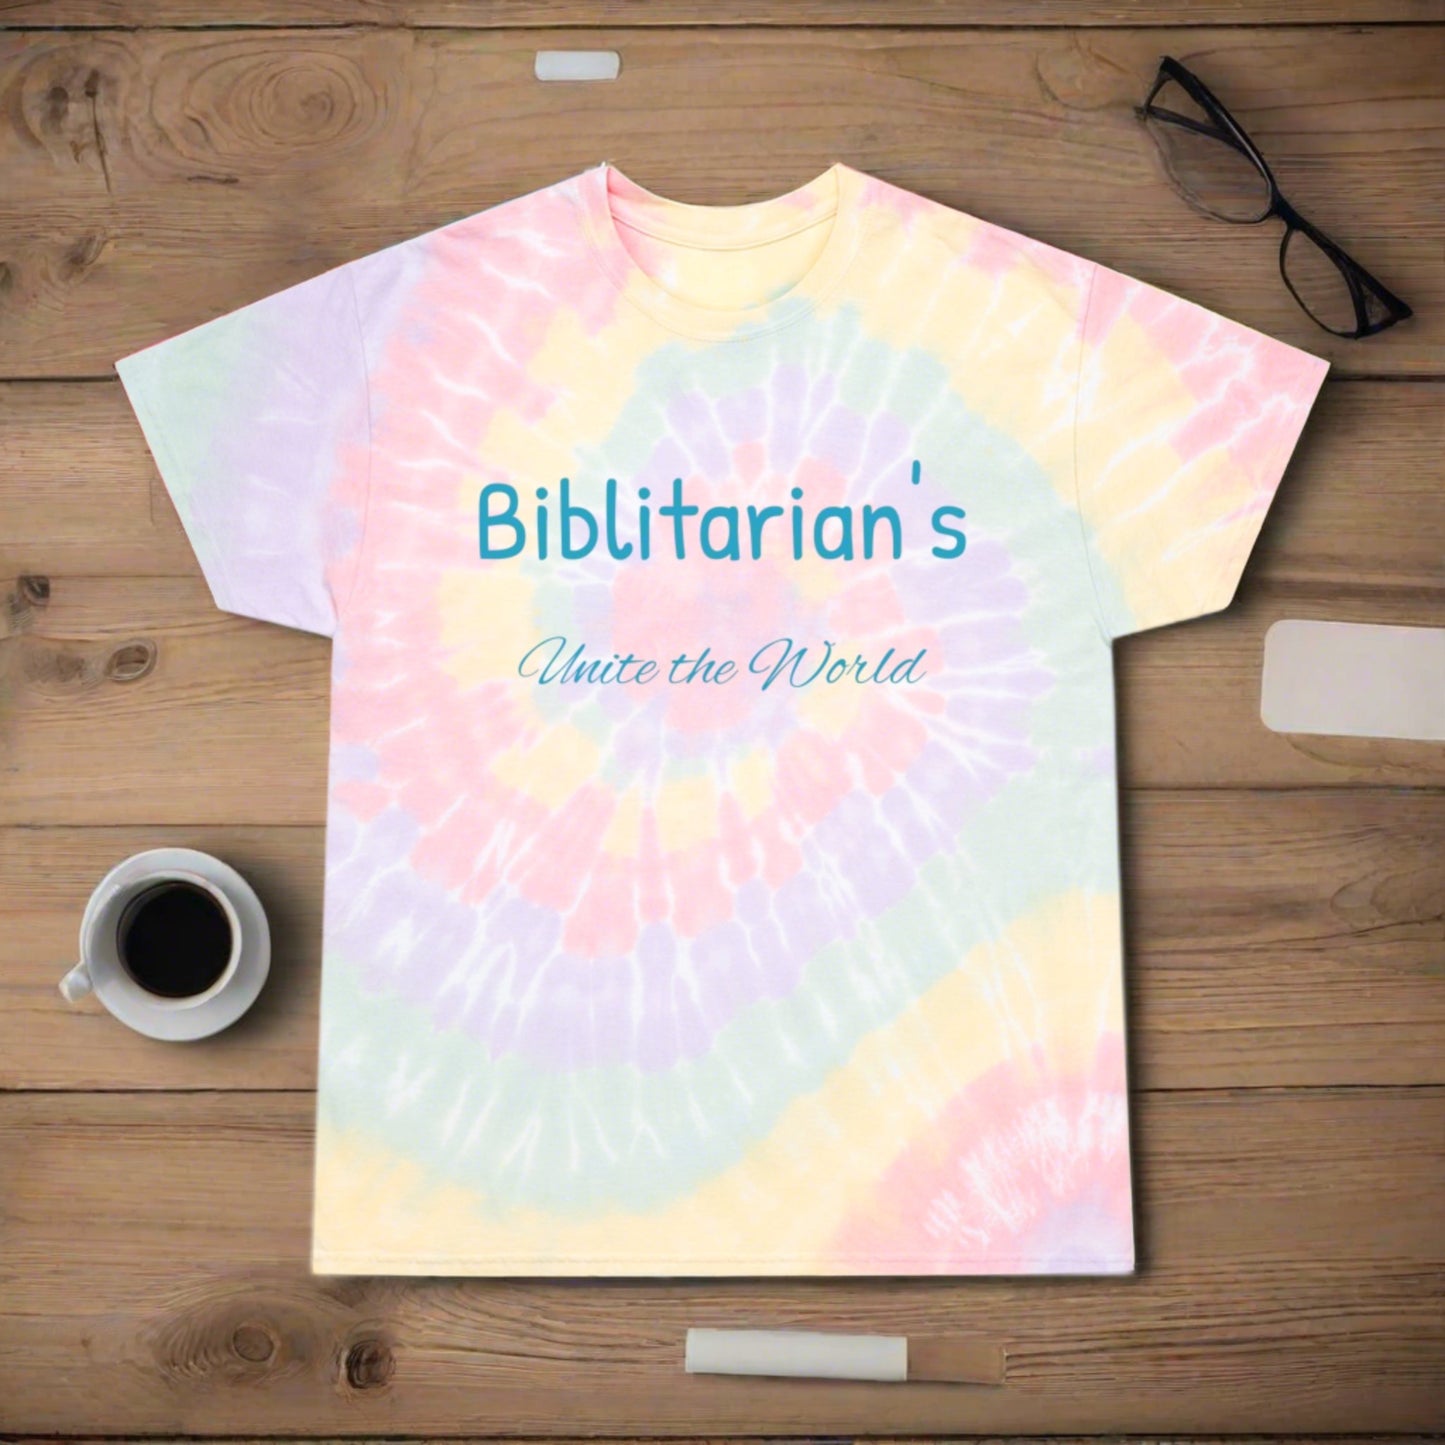 Biblitarian: The Original Bible Scholar